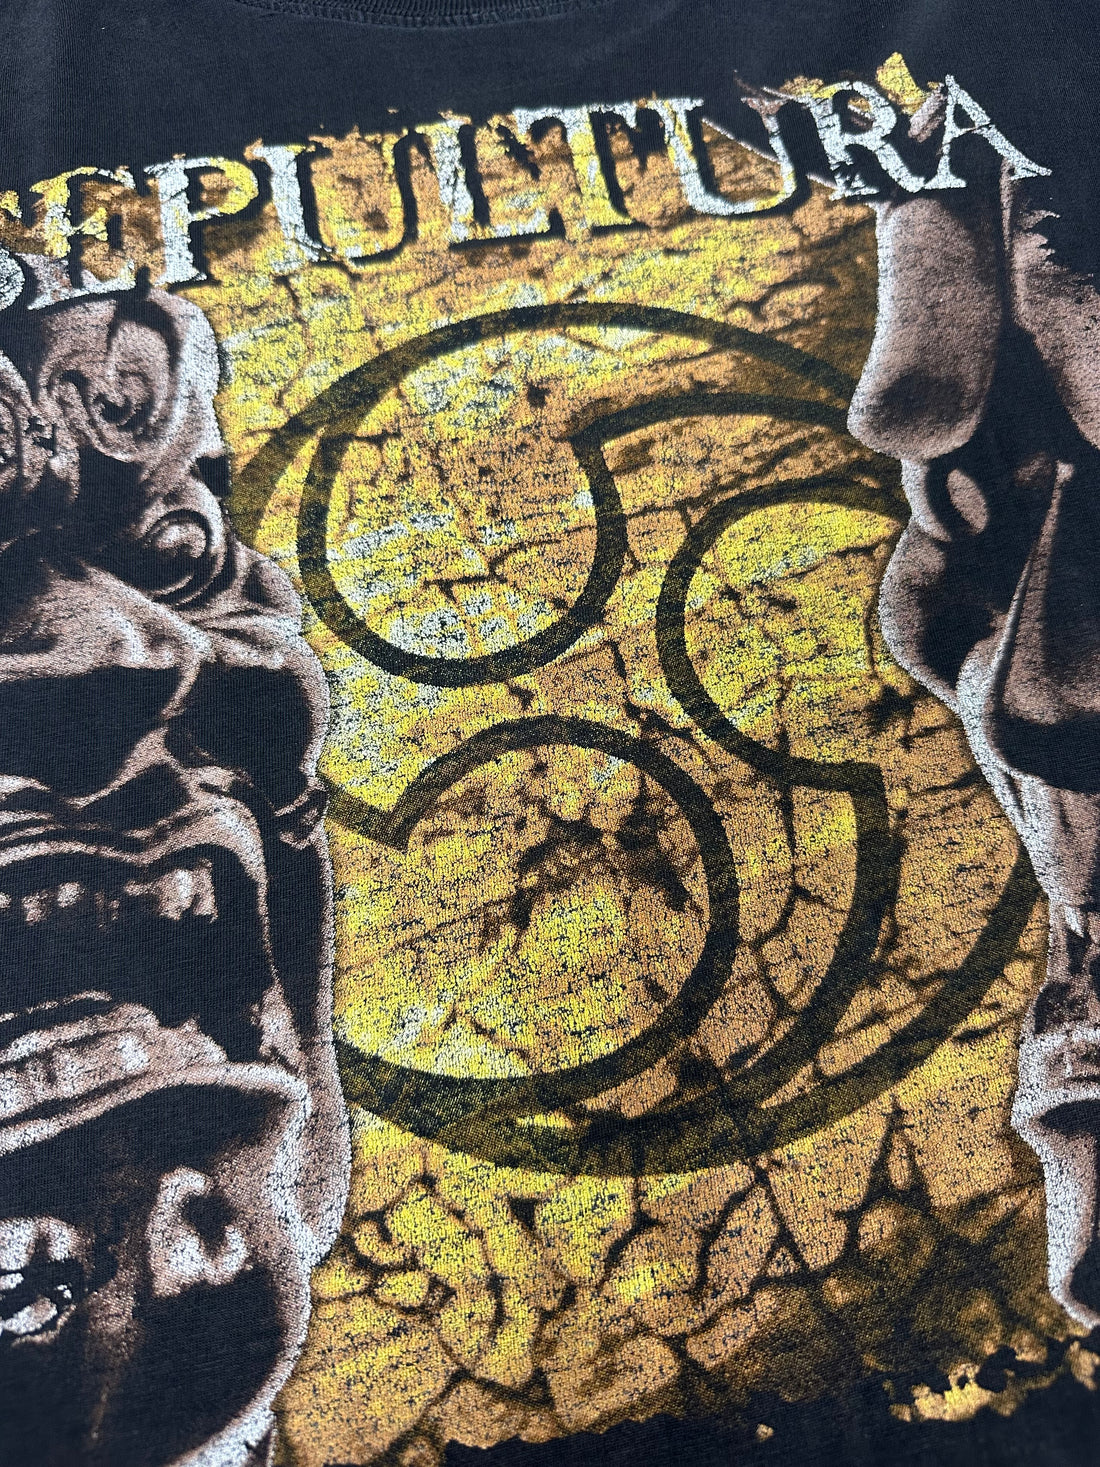 Sepultura 1998 Against Europe Vintage Longsleeve